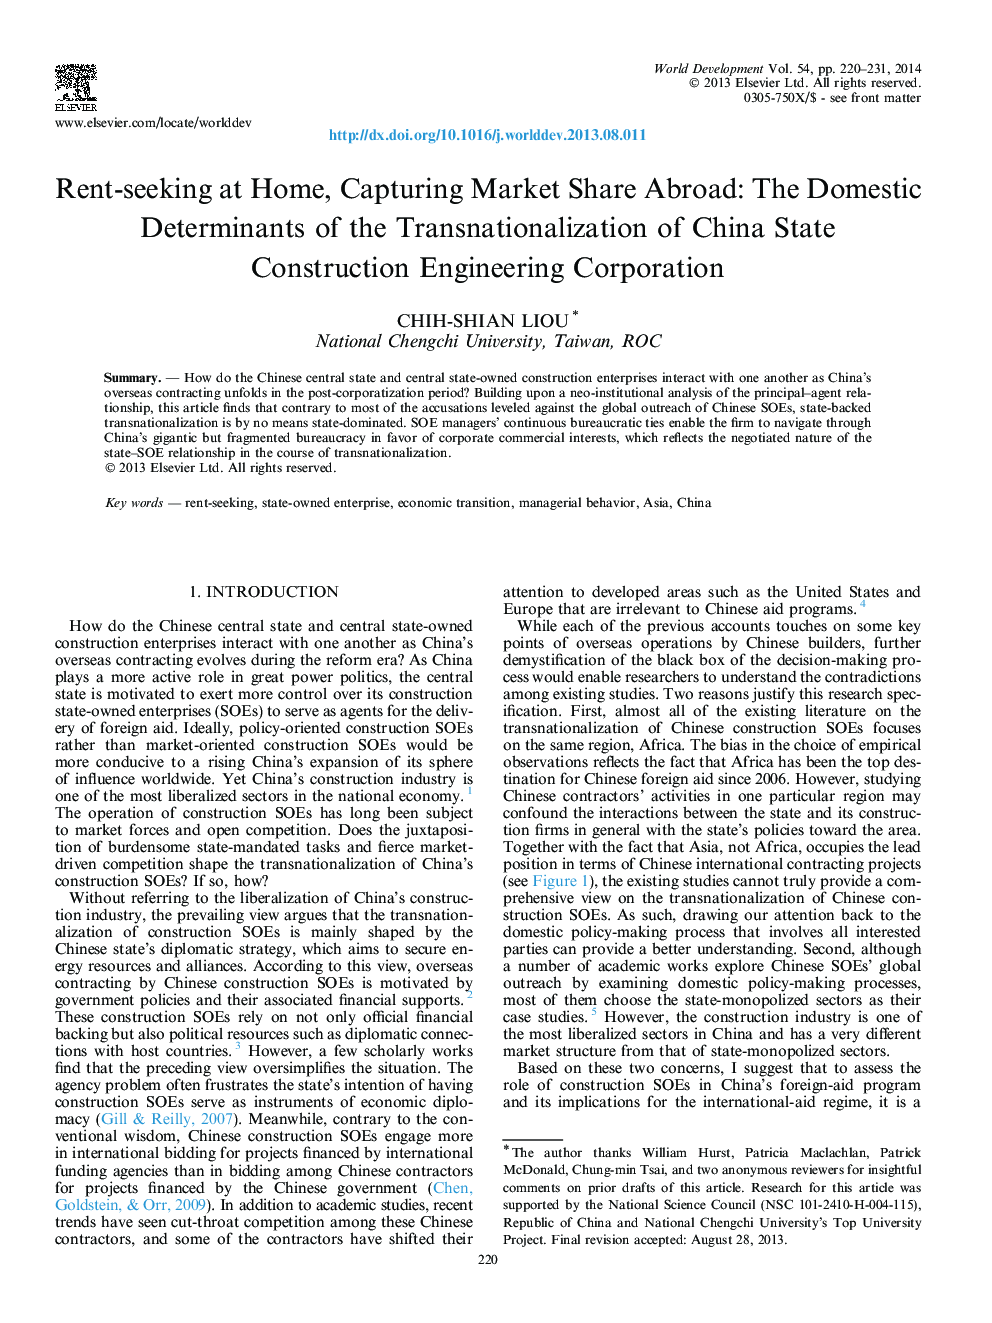 اجاره به دنبال خانه، گرفتن بازار سهم در خارج از کشور: عوامل تعیین کننده داخلی بین المللی سازی شرکت مهندسی ساخت و ساز چین 